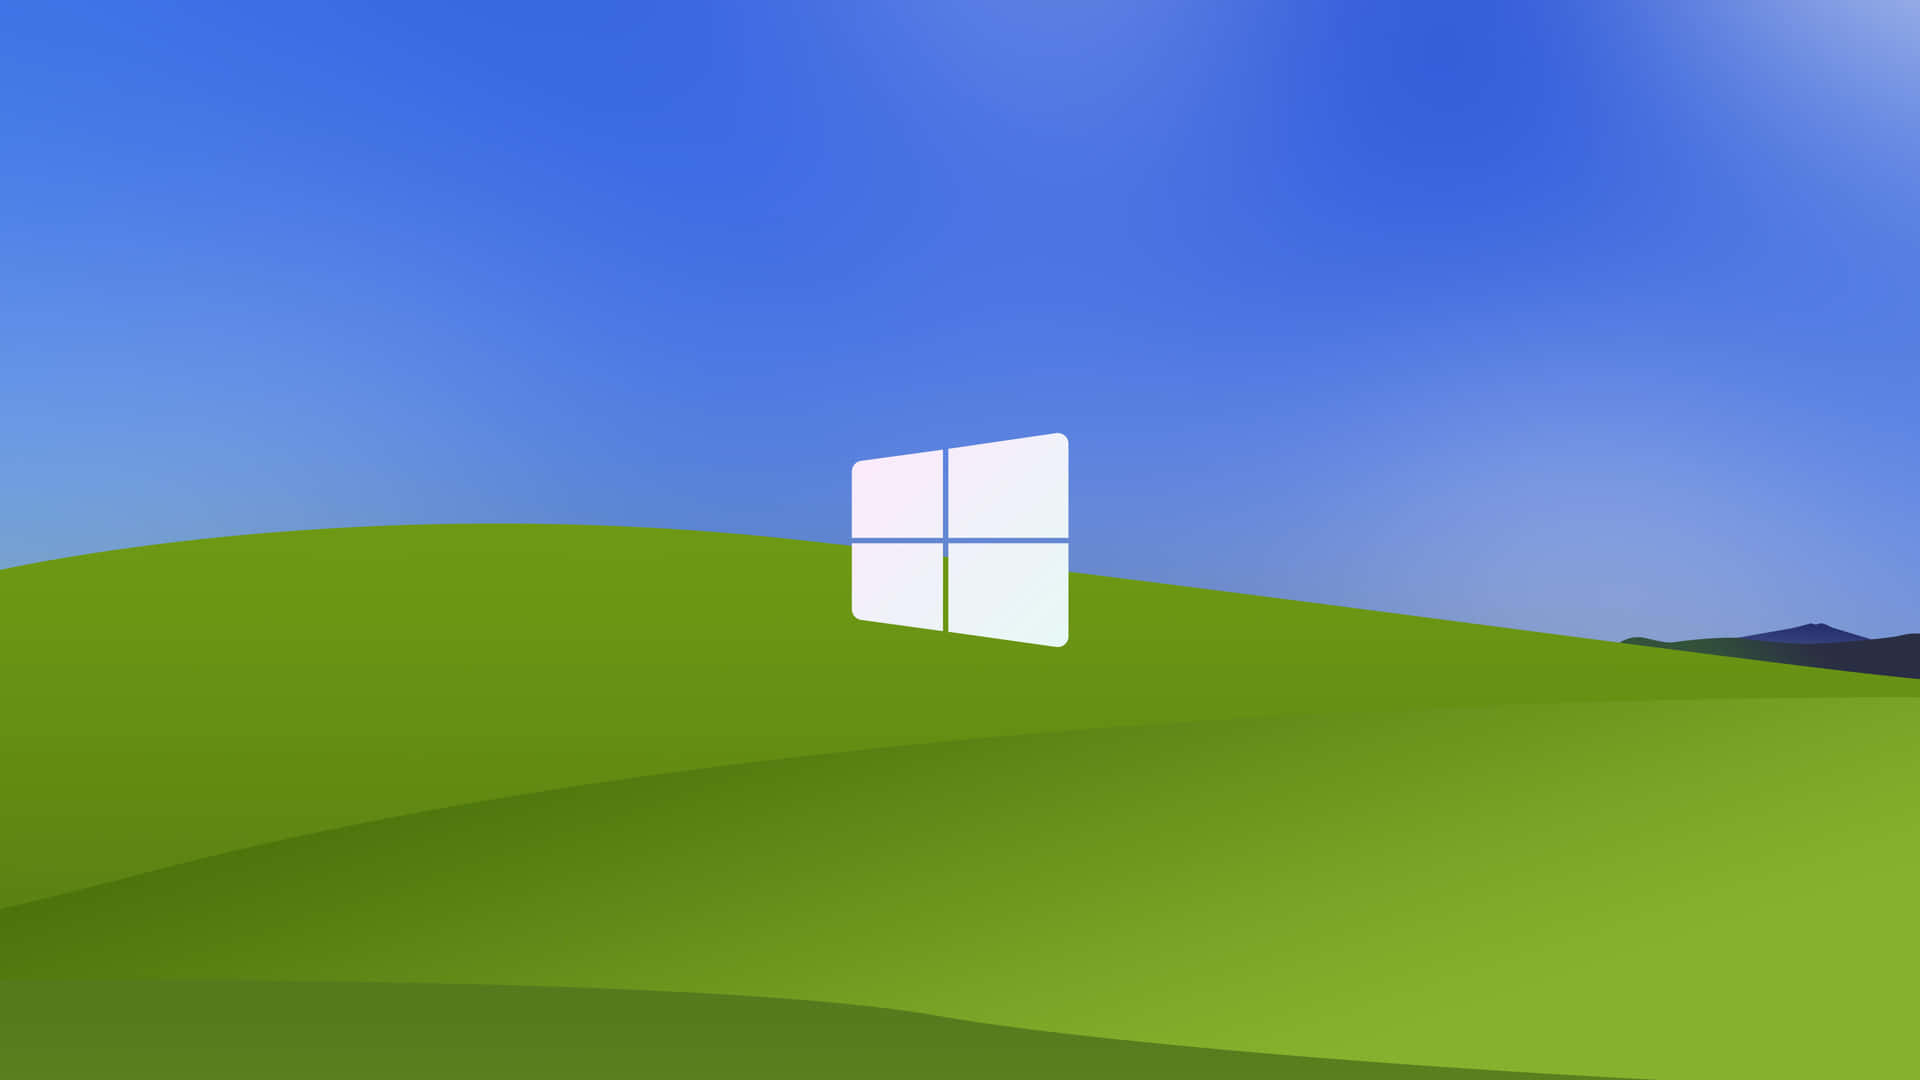 Logotipode Windows Xp Fondo de pantalla